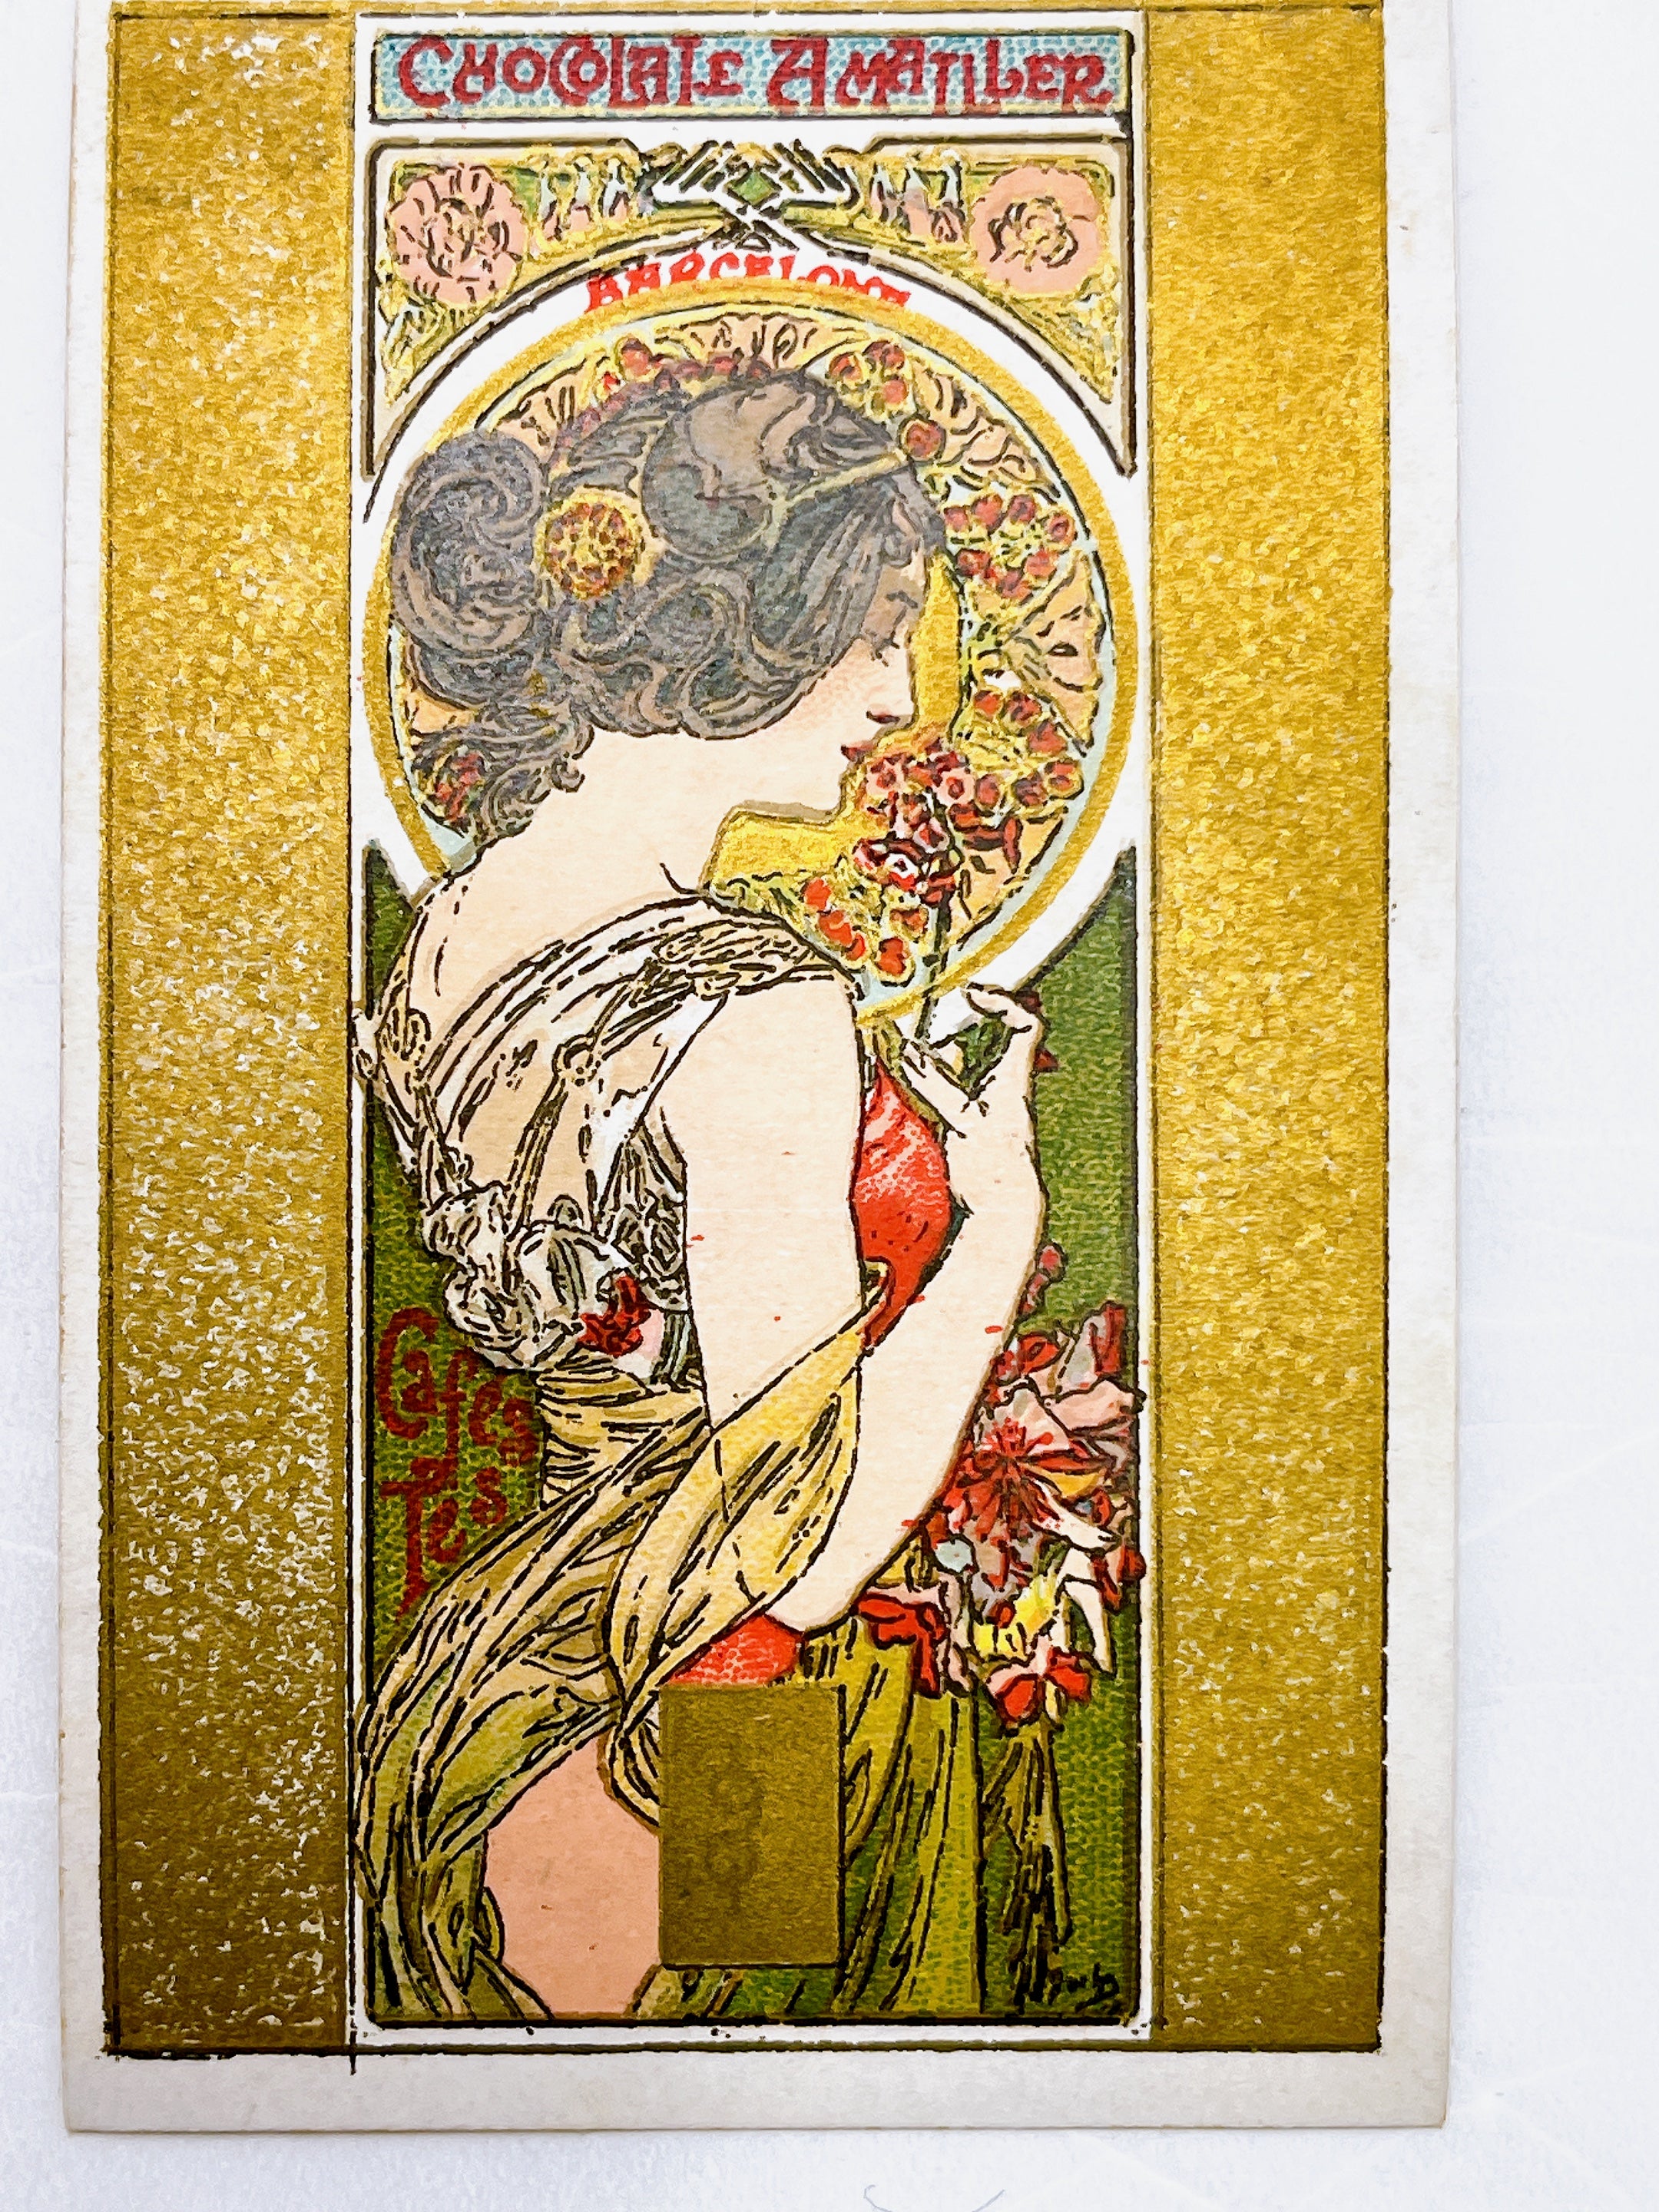 アルフォンス・ミュシャ「桜草」アマリエチョコレートカード 1900年頃